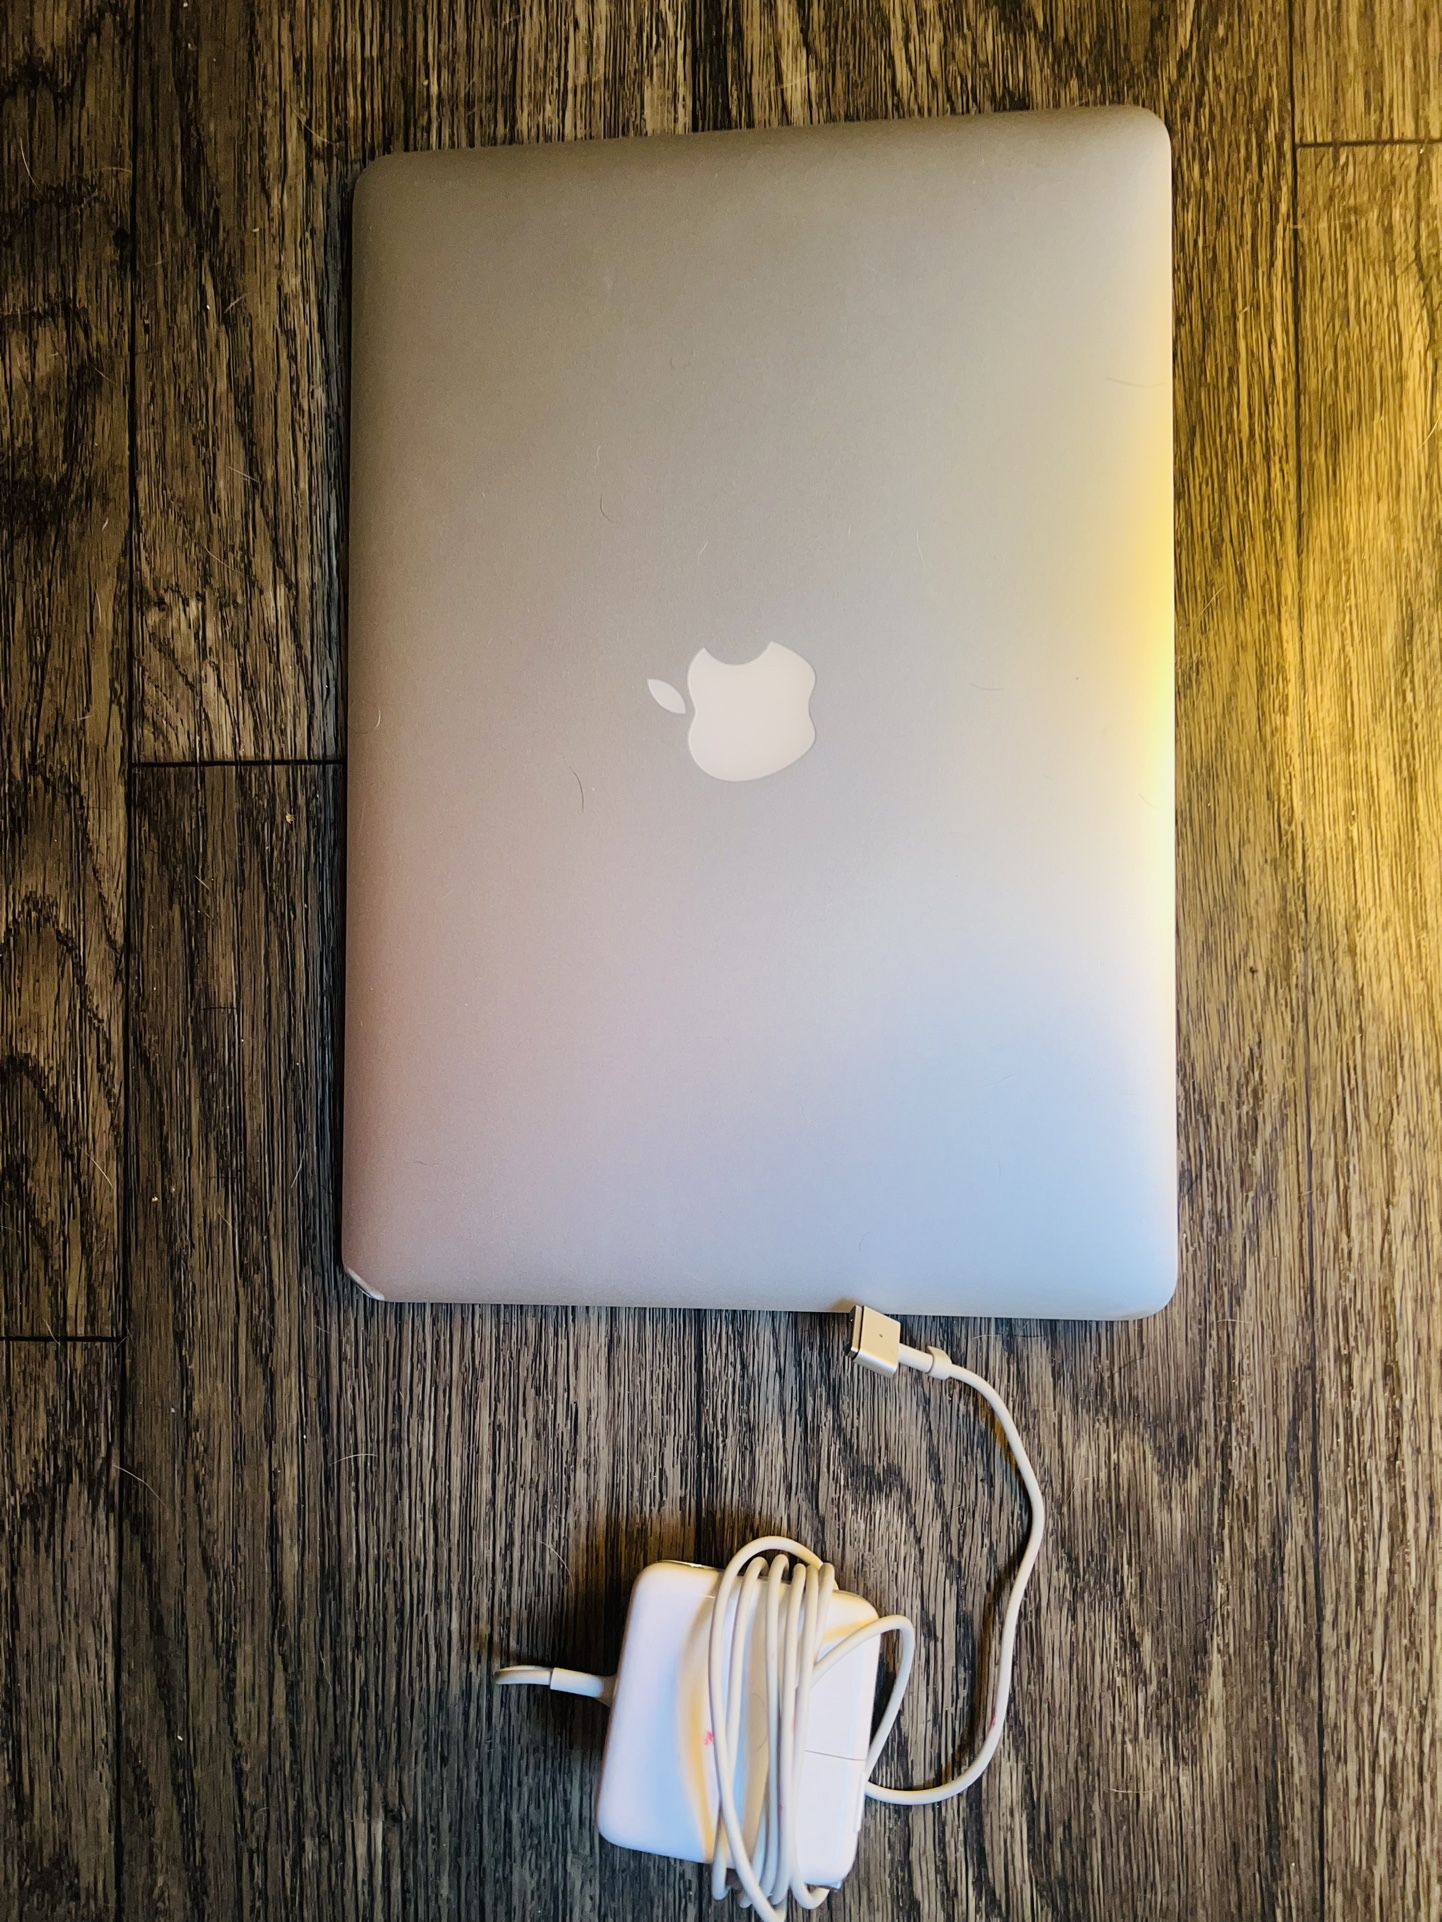 APPLE 🍎 MacBook Air 💻  Laptop 